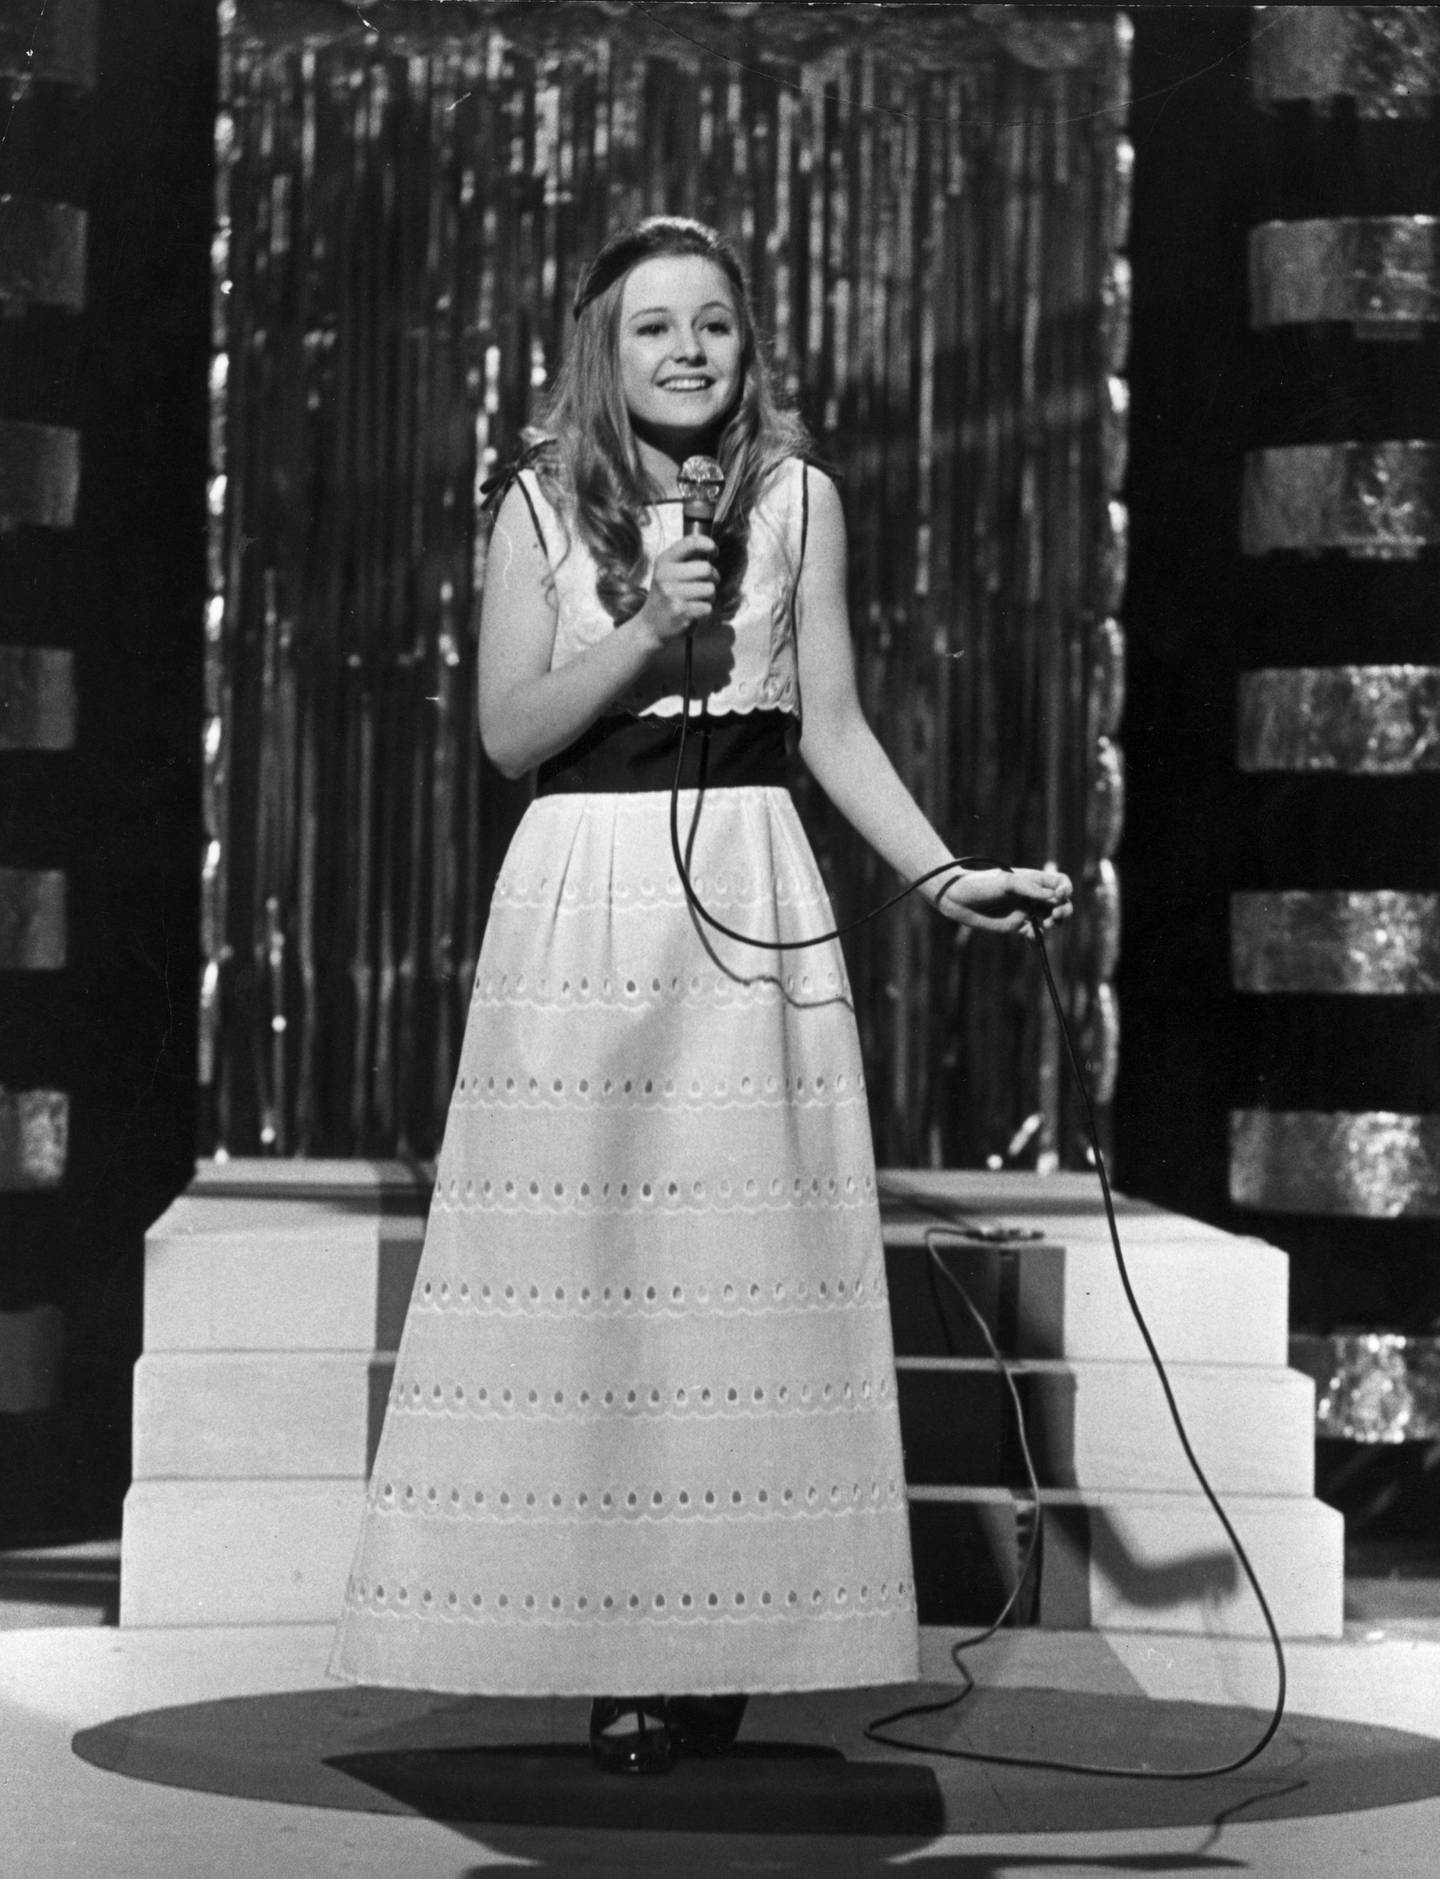 15 år gamle Hanne Krogh deltok i Eurovision for Norge i 1971 med låten «Lykken er». Her fra den norske finalen.